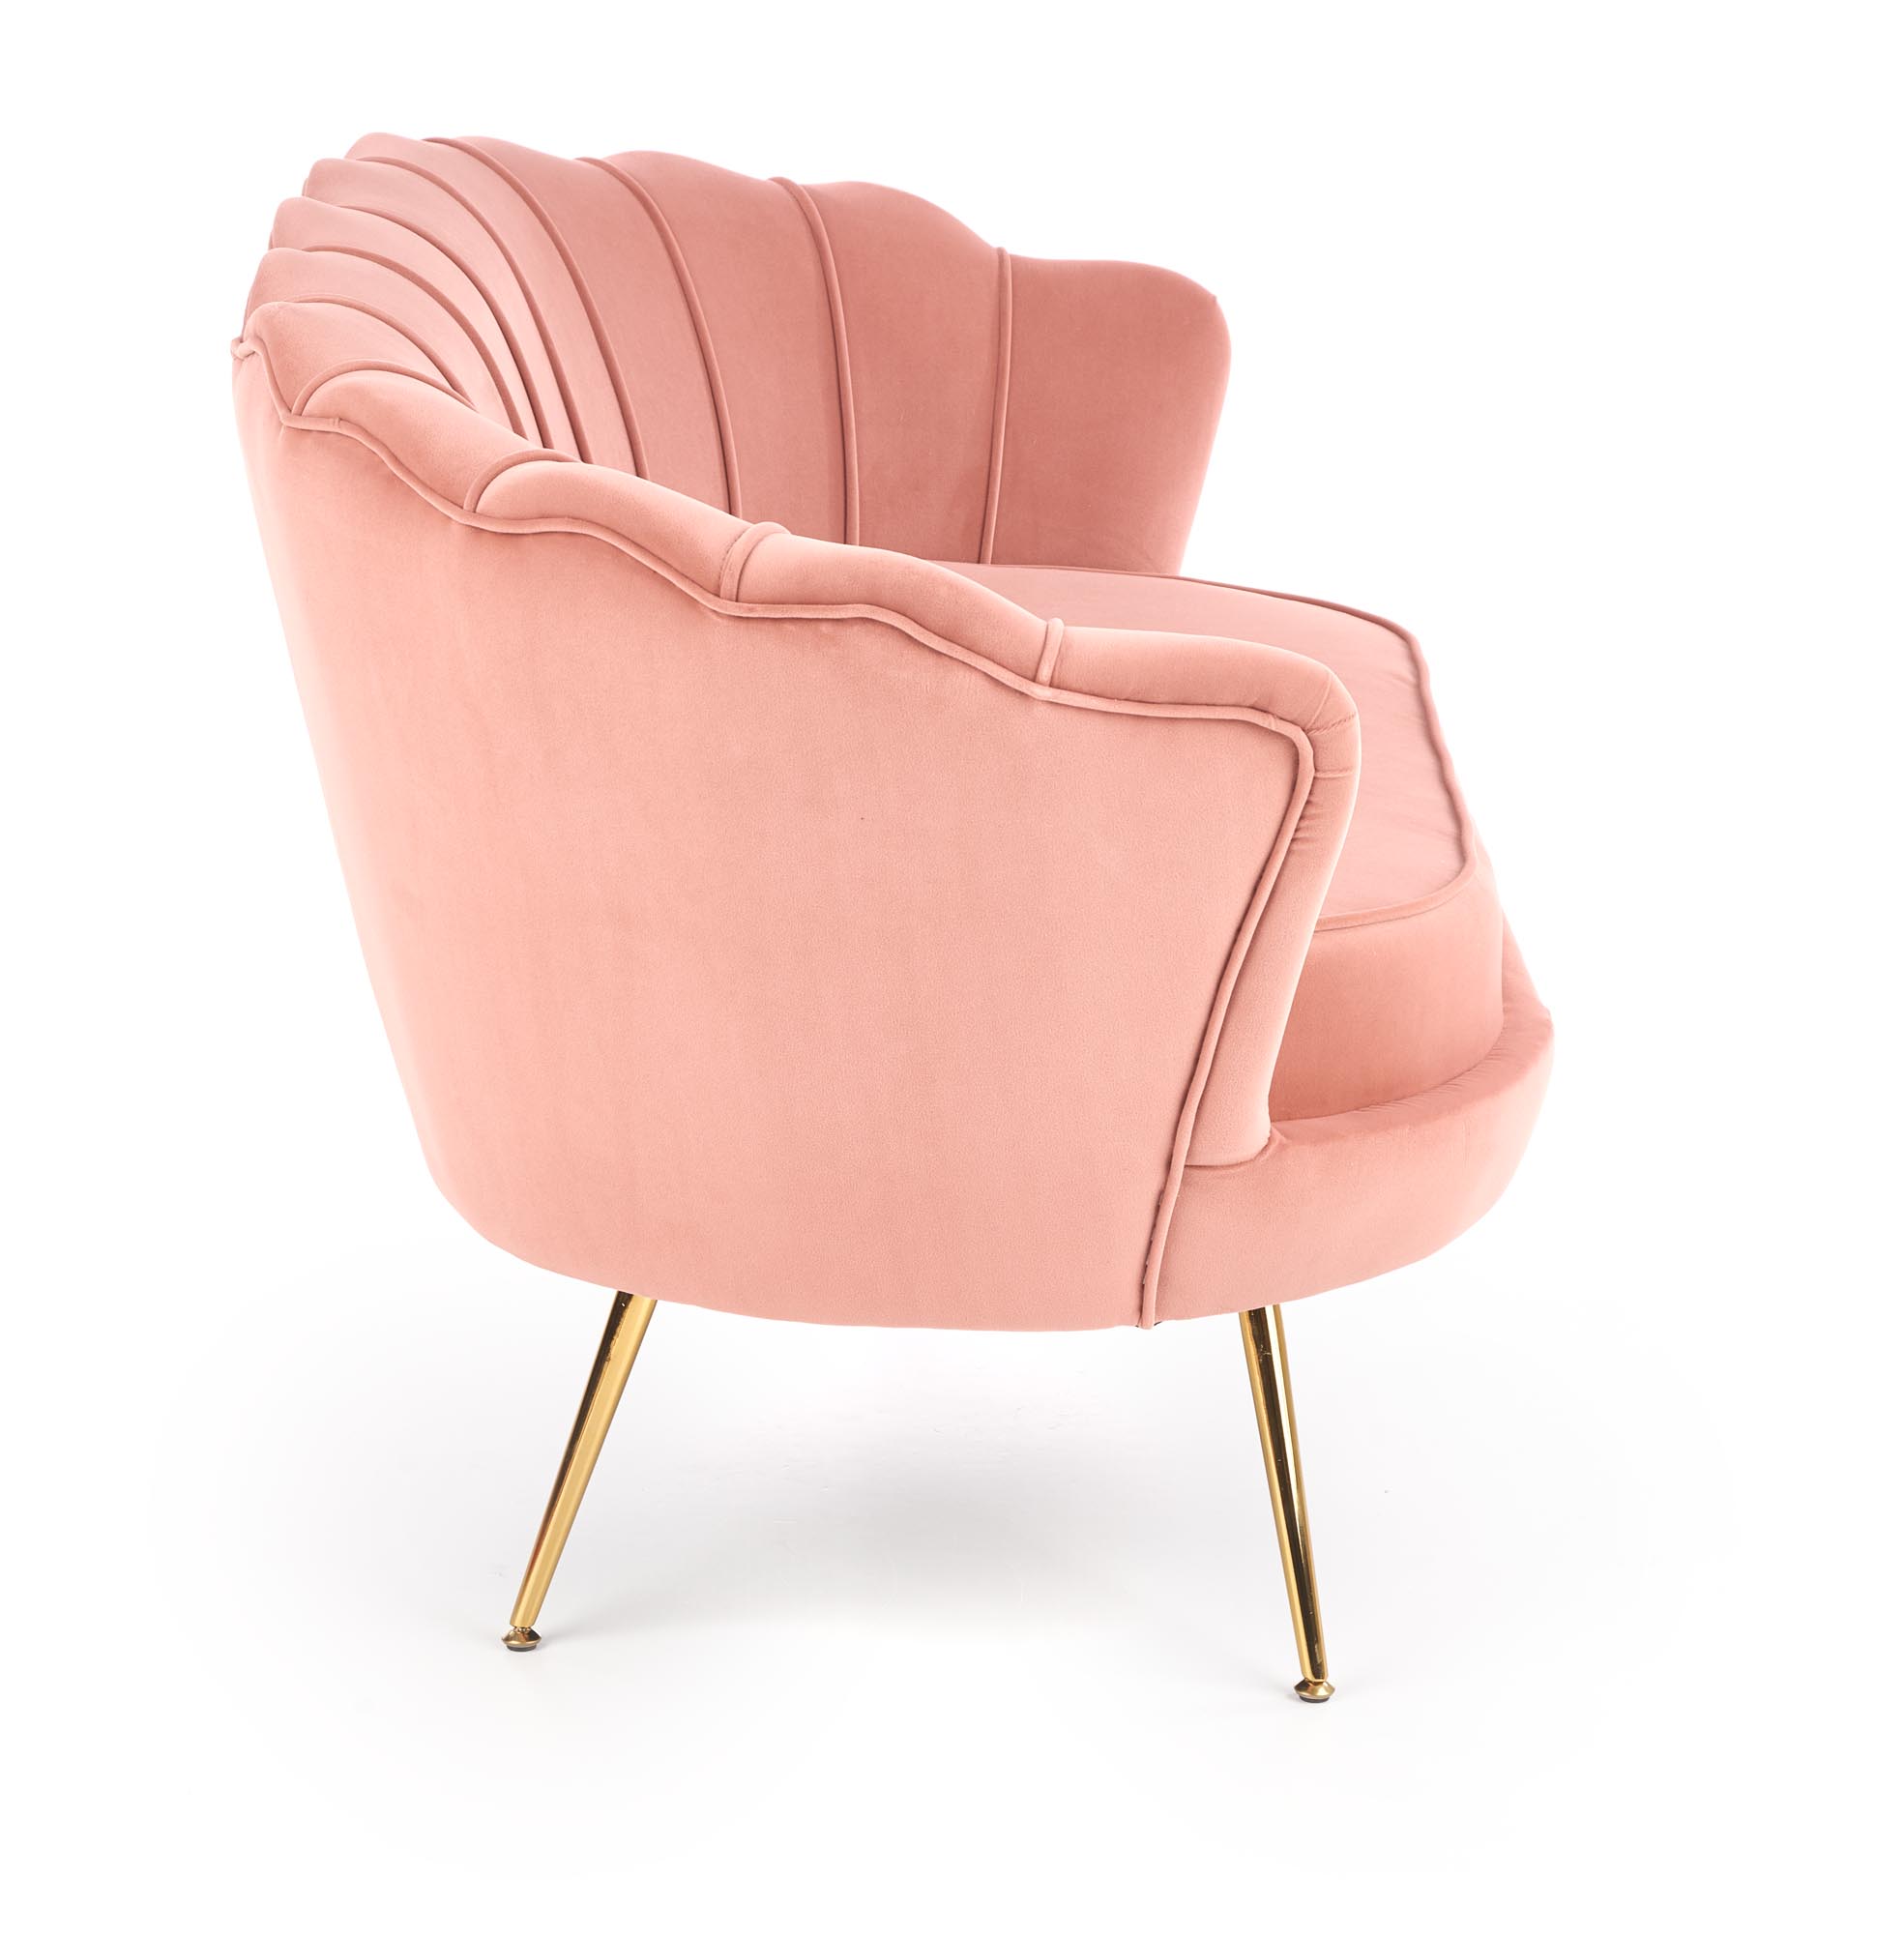 Fotel muszelka Amorinito jasny różowy/złoty fotel muszelka amorinito jasny różowy/złoty